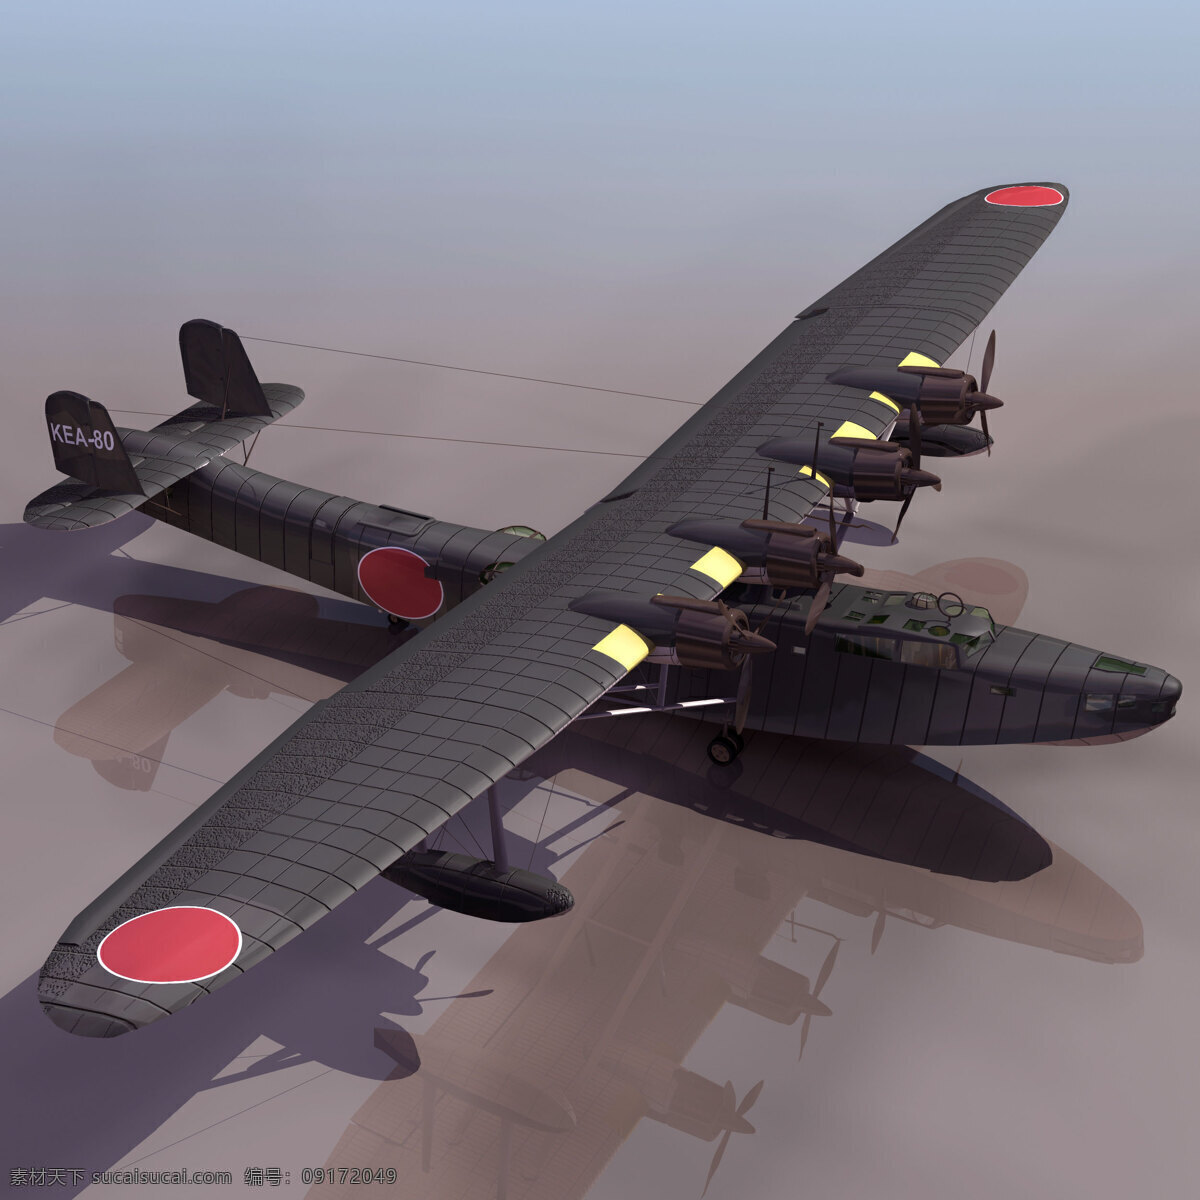 3d 军用 运输机 模型 3d飞机模型 3d设计模型 max 飞机模型 军方 模板下载 机场设备模型 3d模型素材 其他3d模型